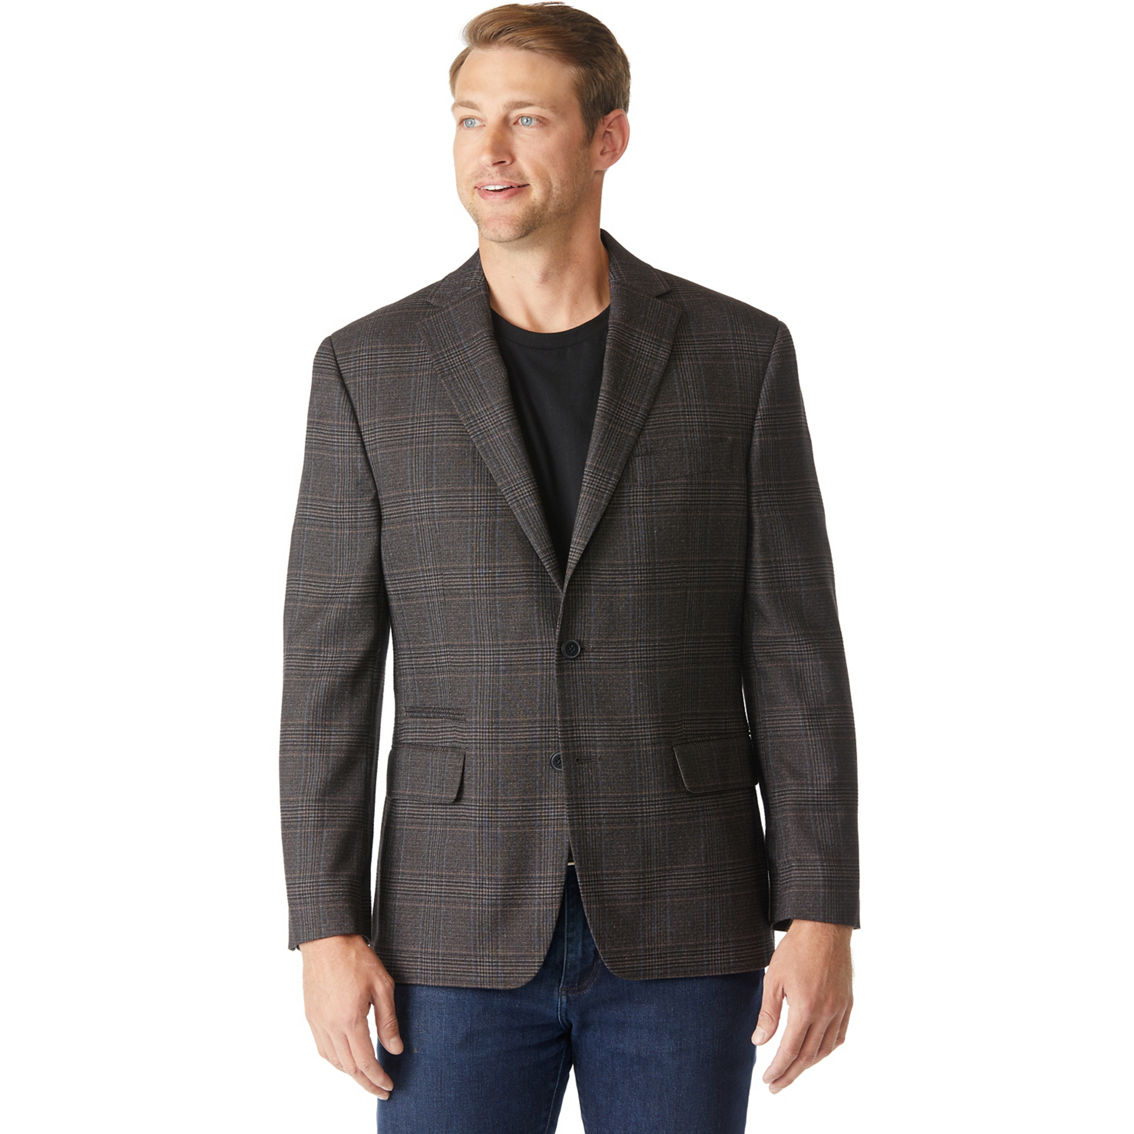 Michael Kors Classic Fit Sport Coat | Suits & Suit Separates | Clothing ...